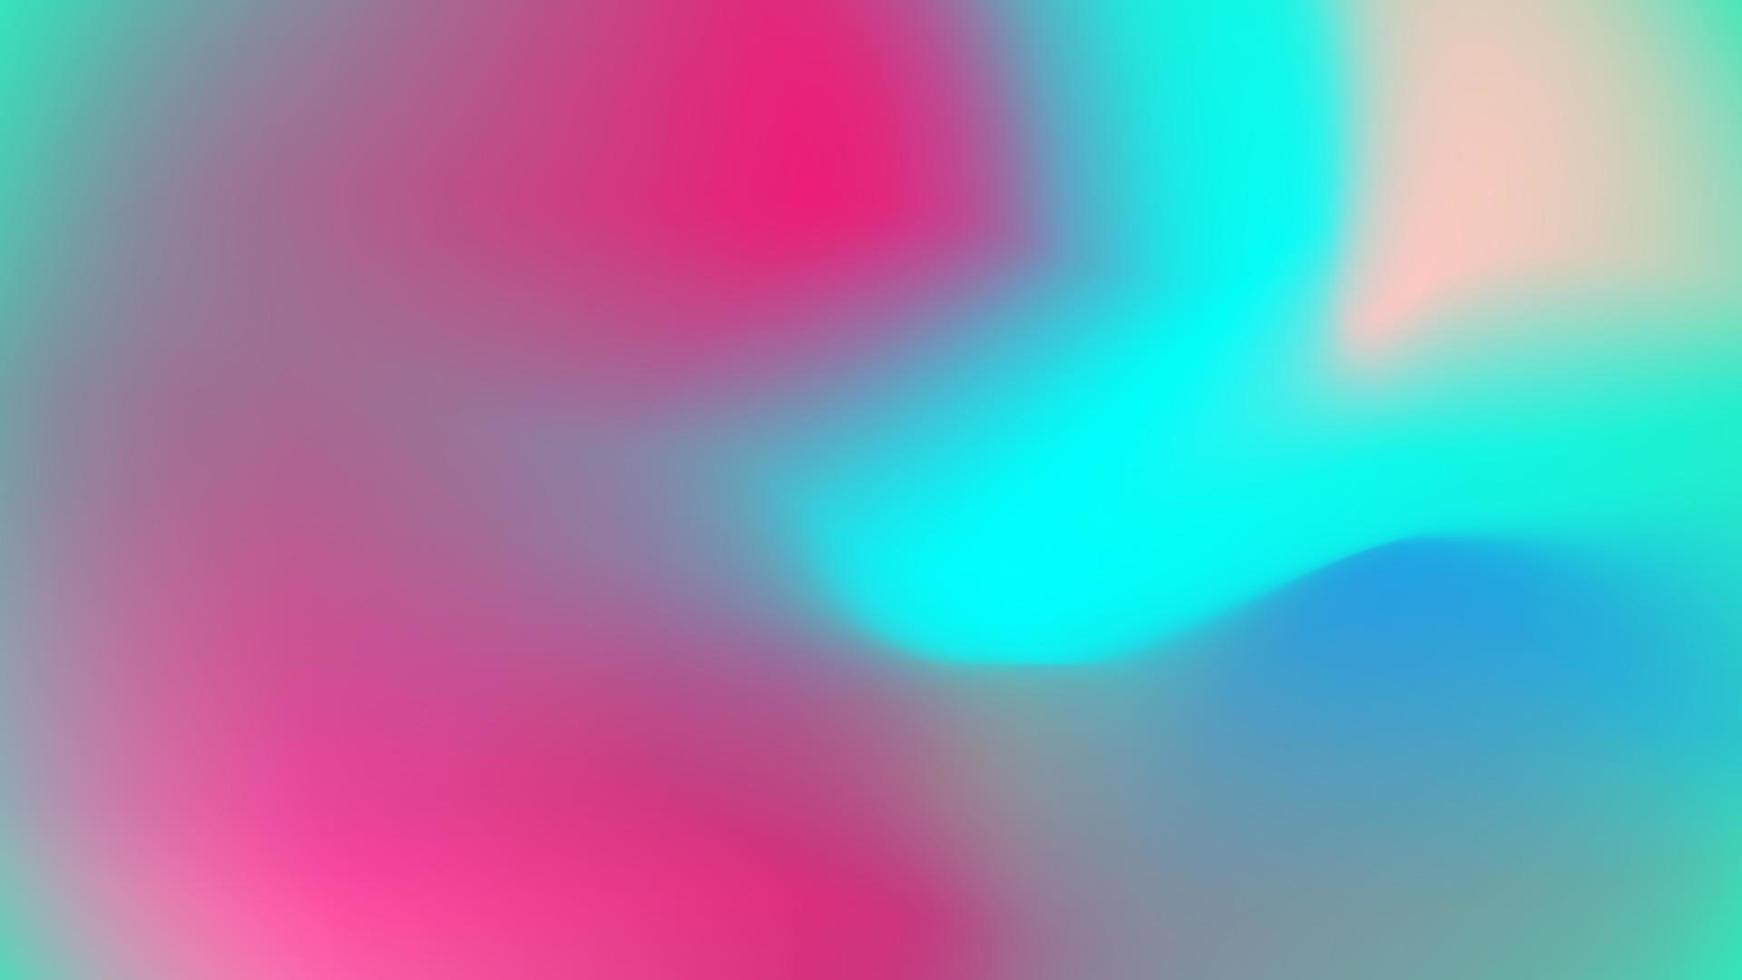 weiche Abstufung, abstrakt in hellem, buntem Farbverlauf, Hintergrund mit Farbverlauf, dekorative Elemente mit unscharfer Farbverlauf-Textur, rosa Tapetenvektor. vektor